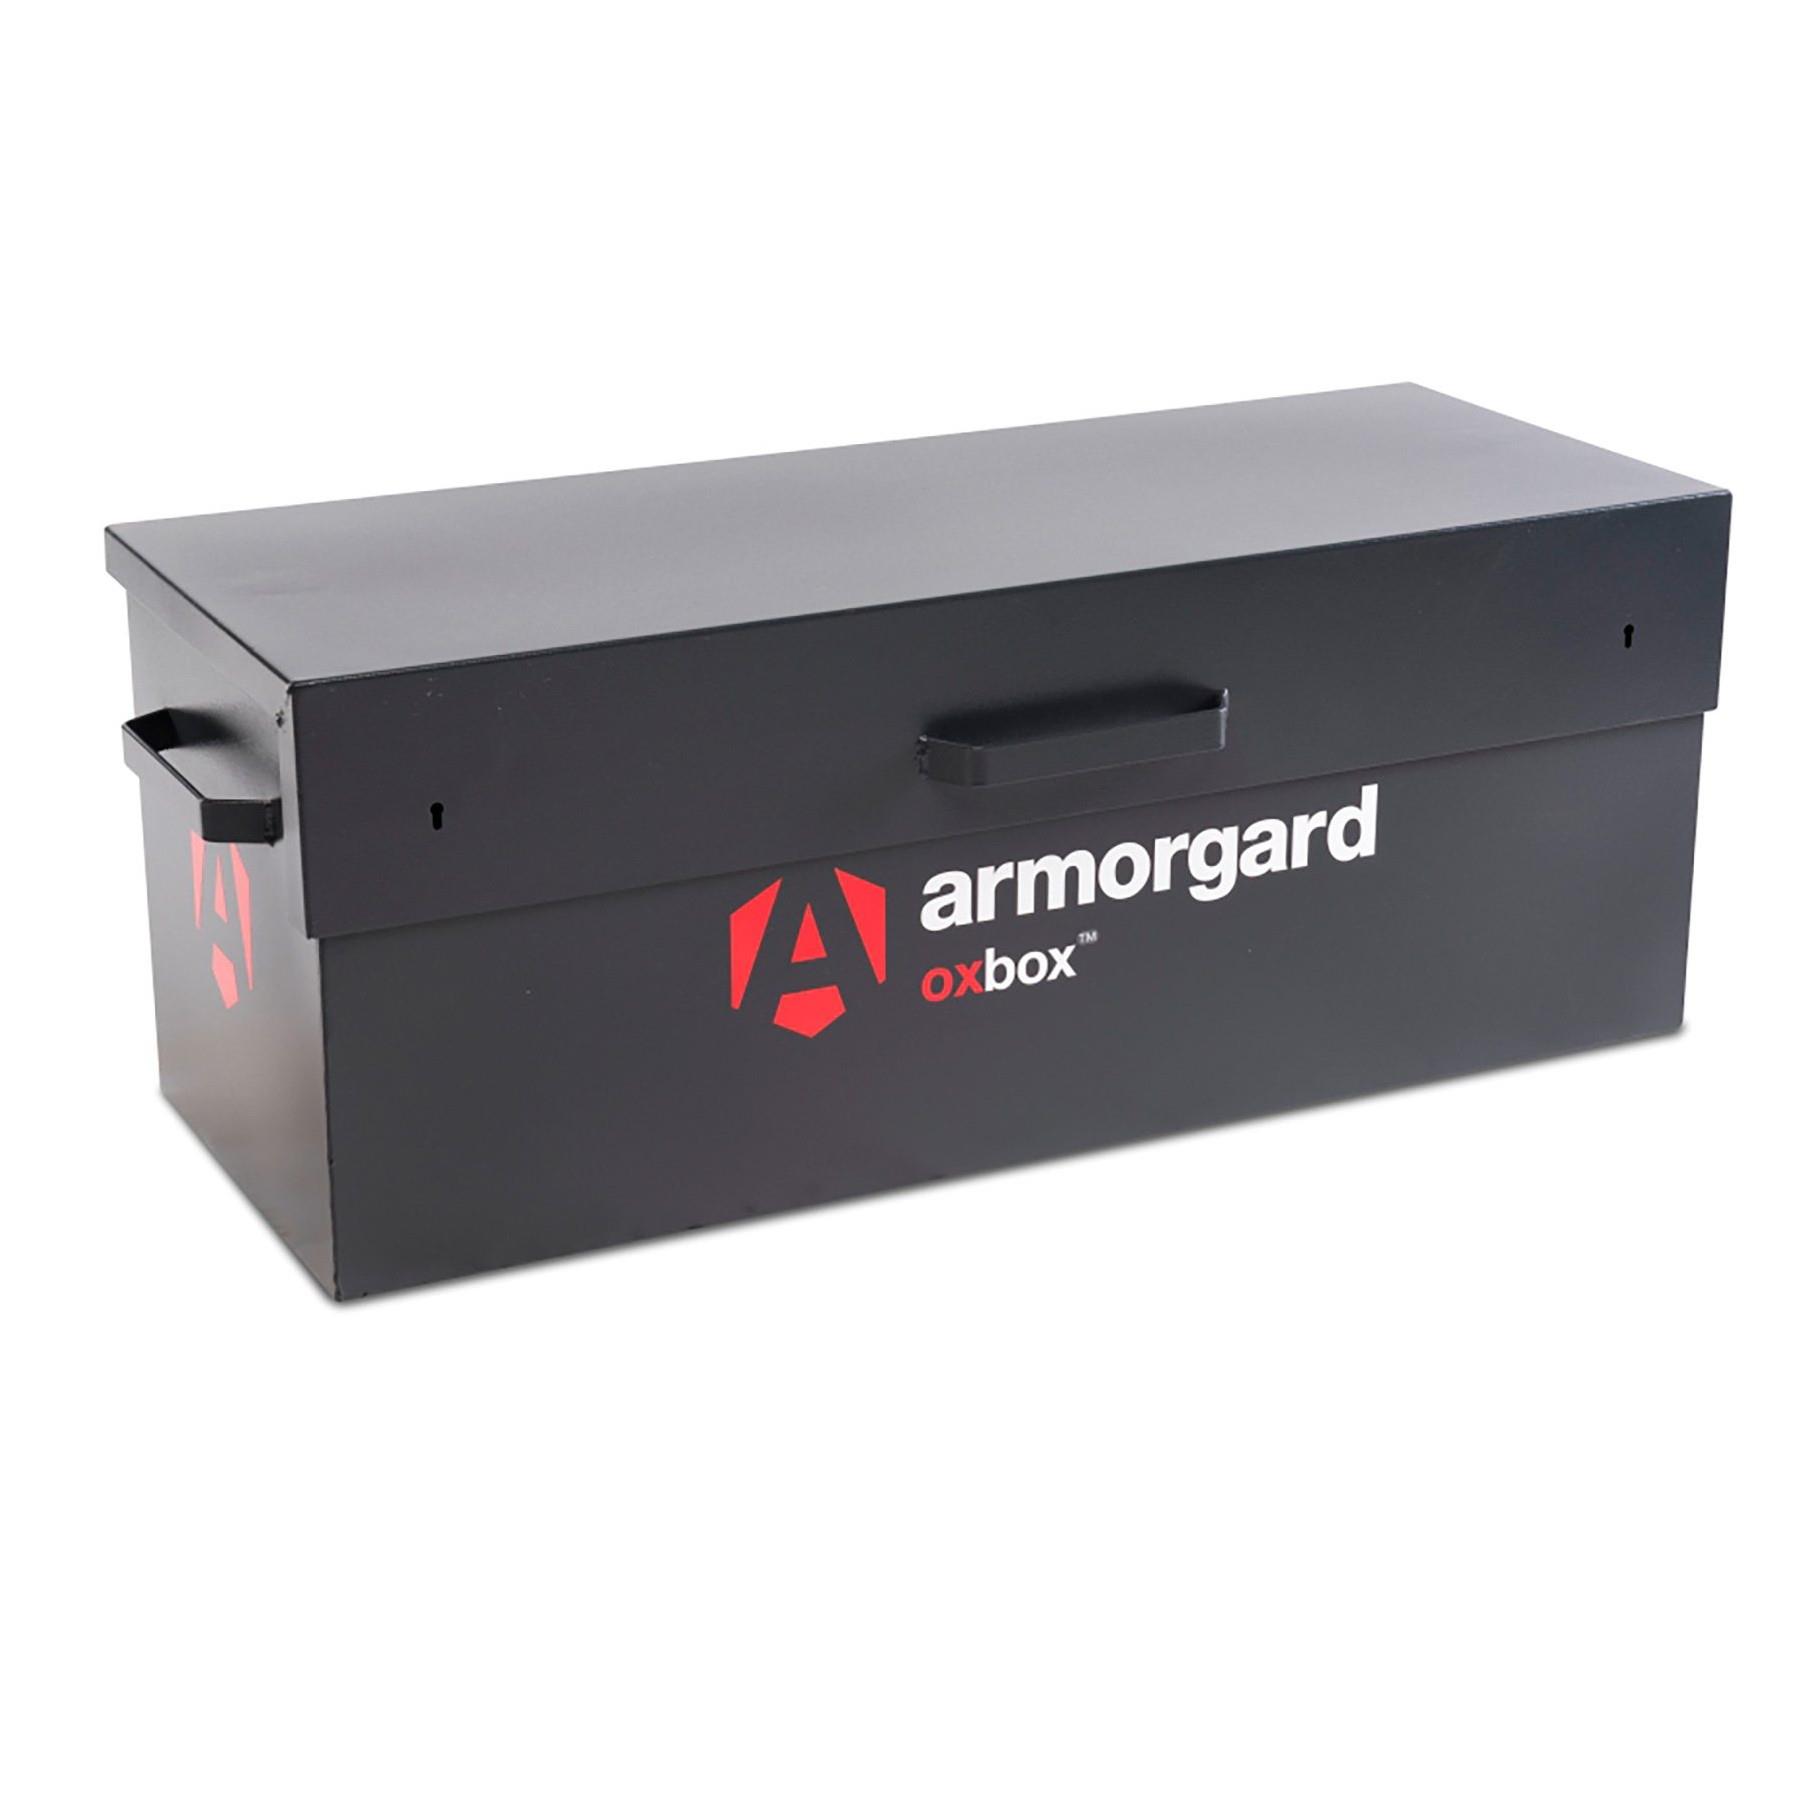 Armorgard OX2 Oxbox Truck Box; 1155 x 450 x 460mm (W x D x H)